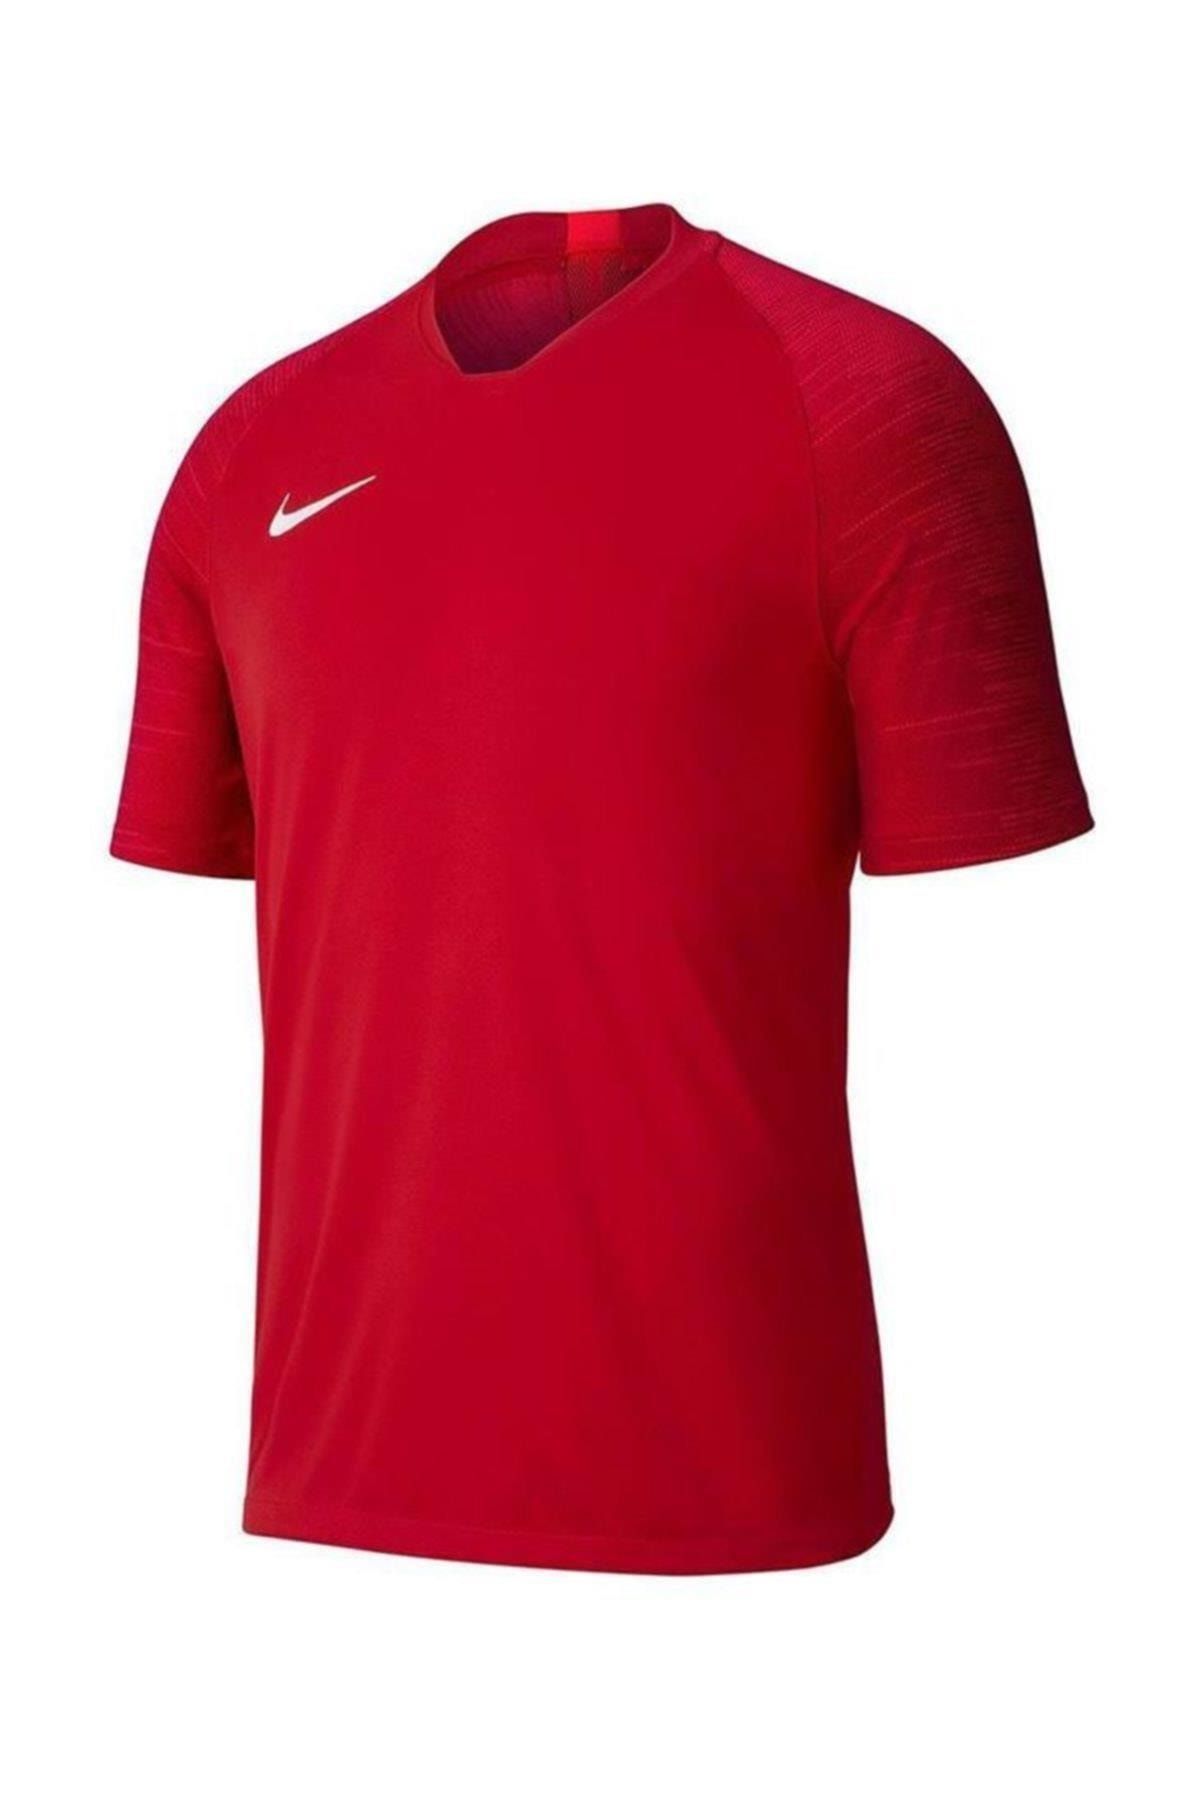 Nike Dry Strike Jsy Erkek Kırmızı Futbol T-shirt